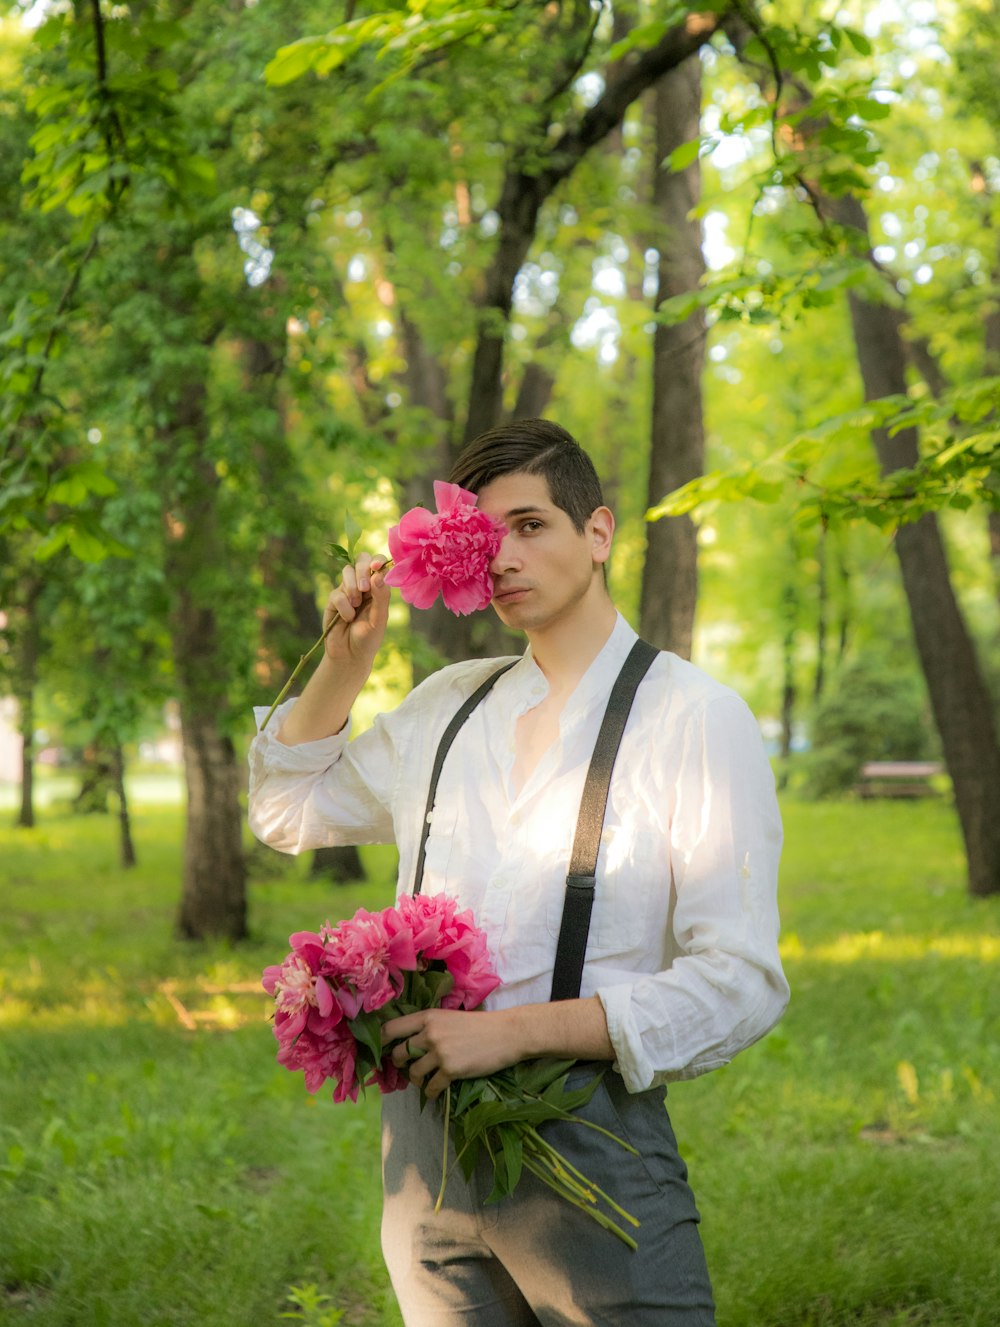 분홍색 꽃다발을 들고 있는 하얀 드레스 셔츠를 입은 남자